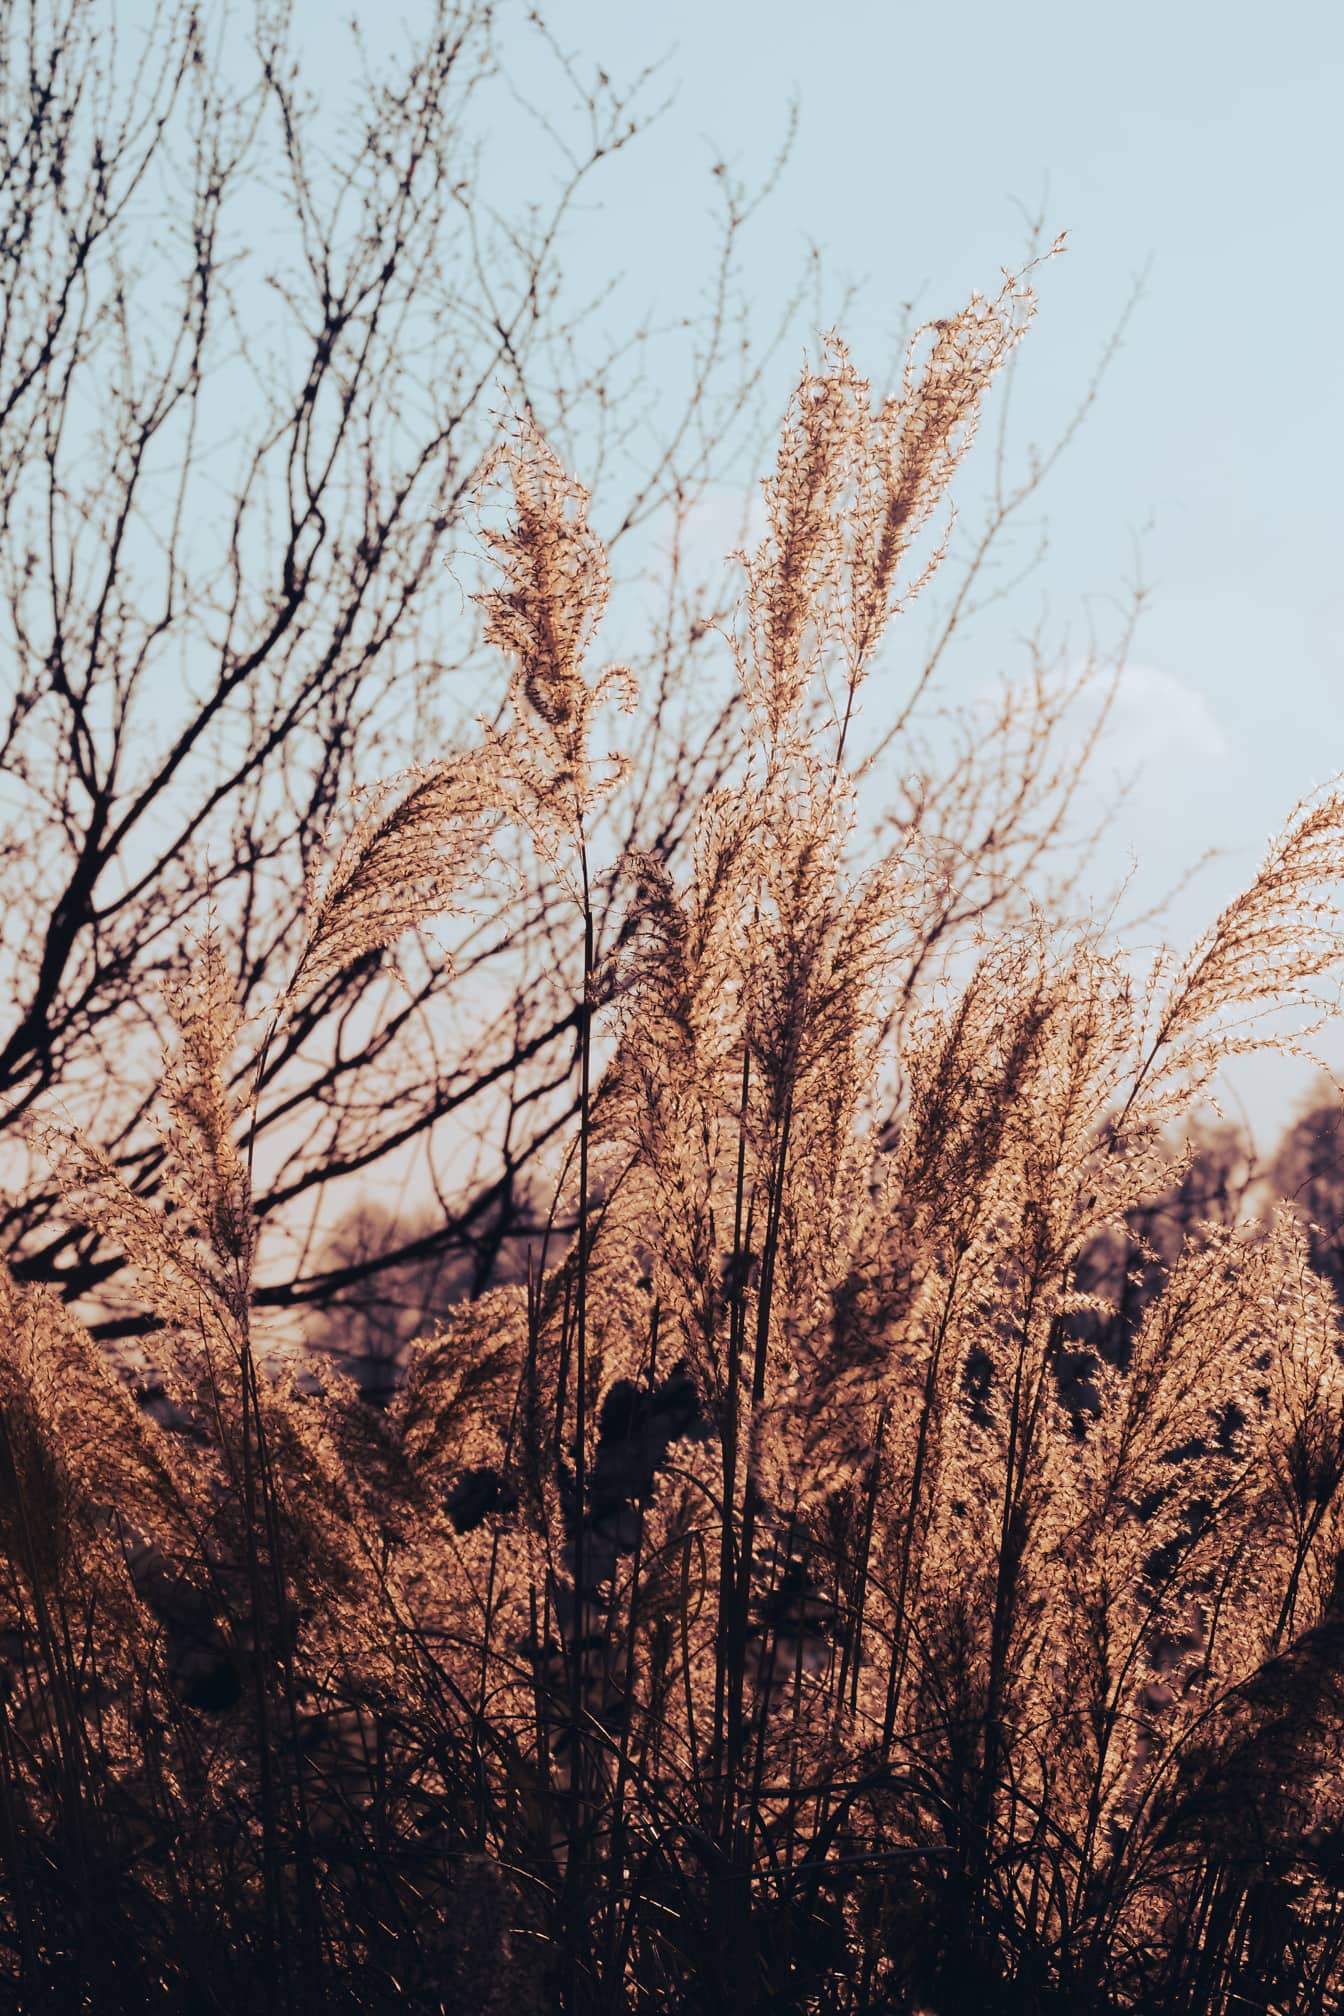 Reed græs (Typha latifolia) i efterårssæsonen på lyse solskinsdag